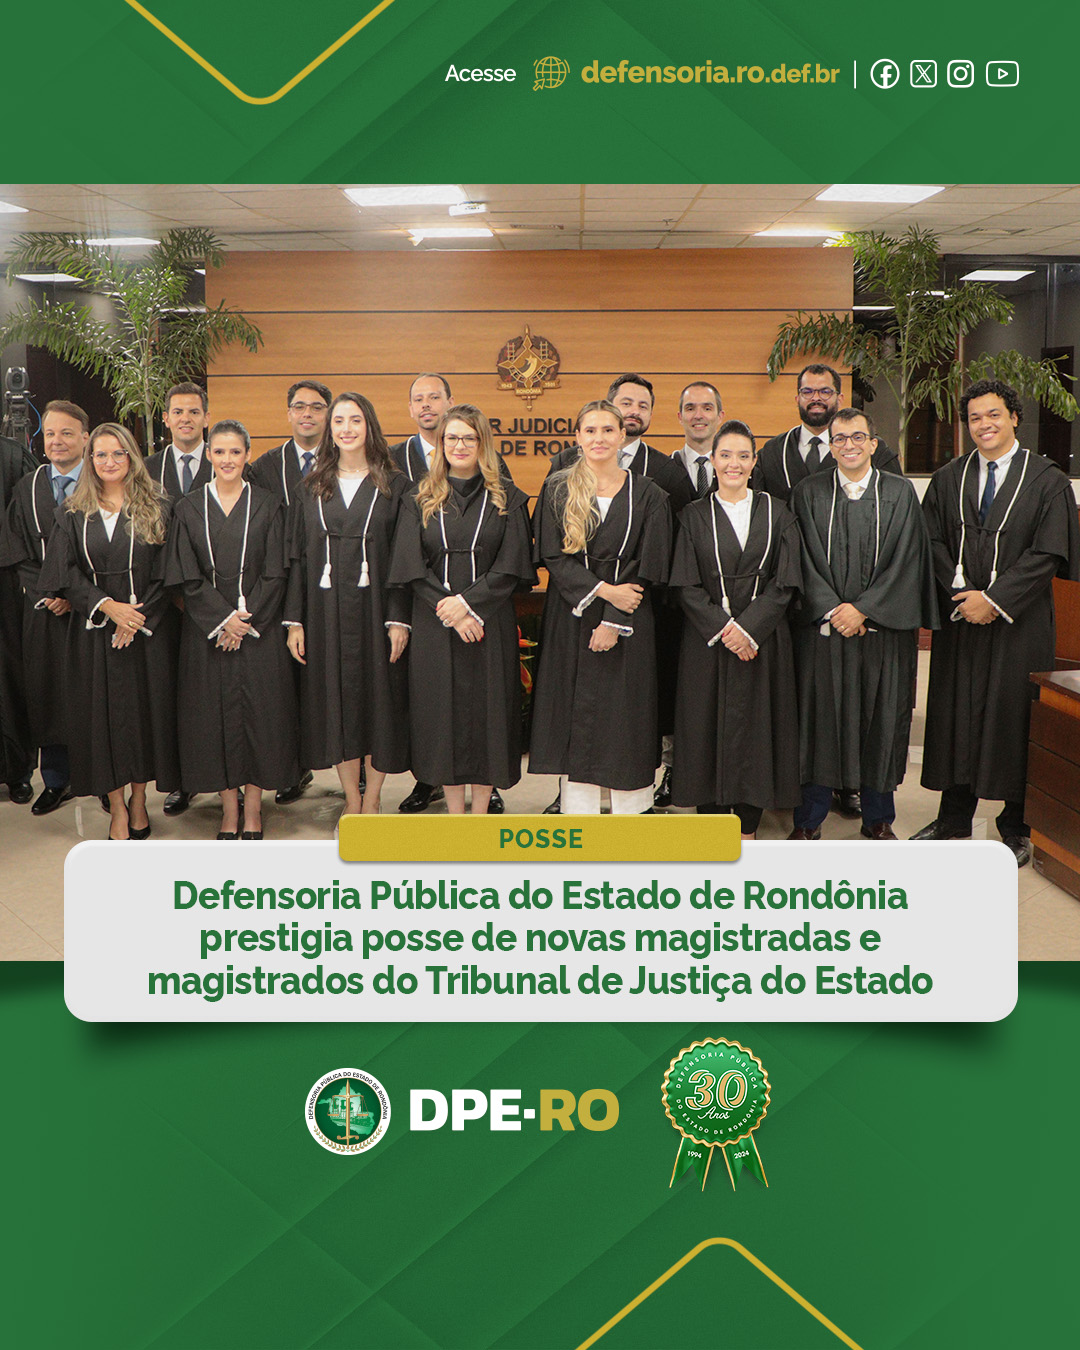 Defensoria Pública do Estado de Rondônia prestigia posse de novas magistradas e magistrados do Tribunal de Justiça do Estado